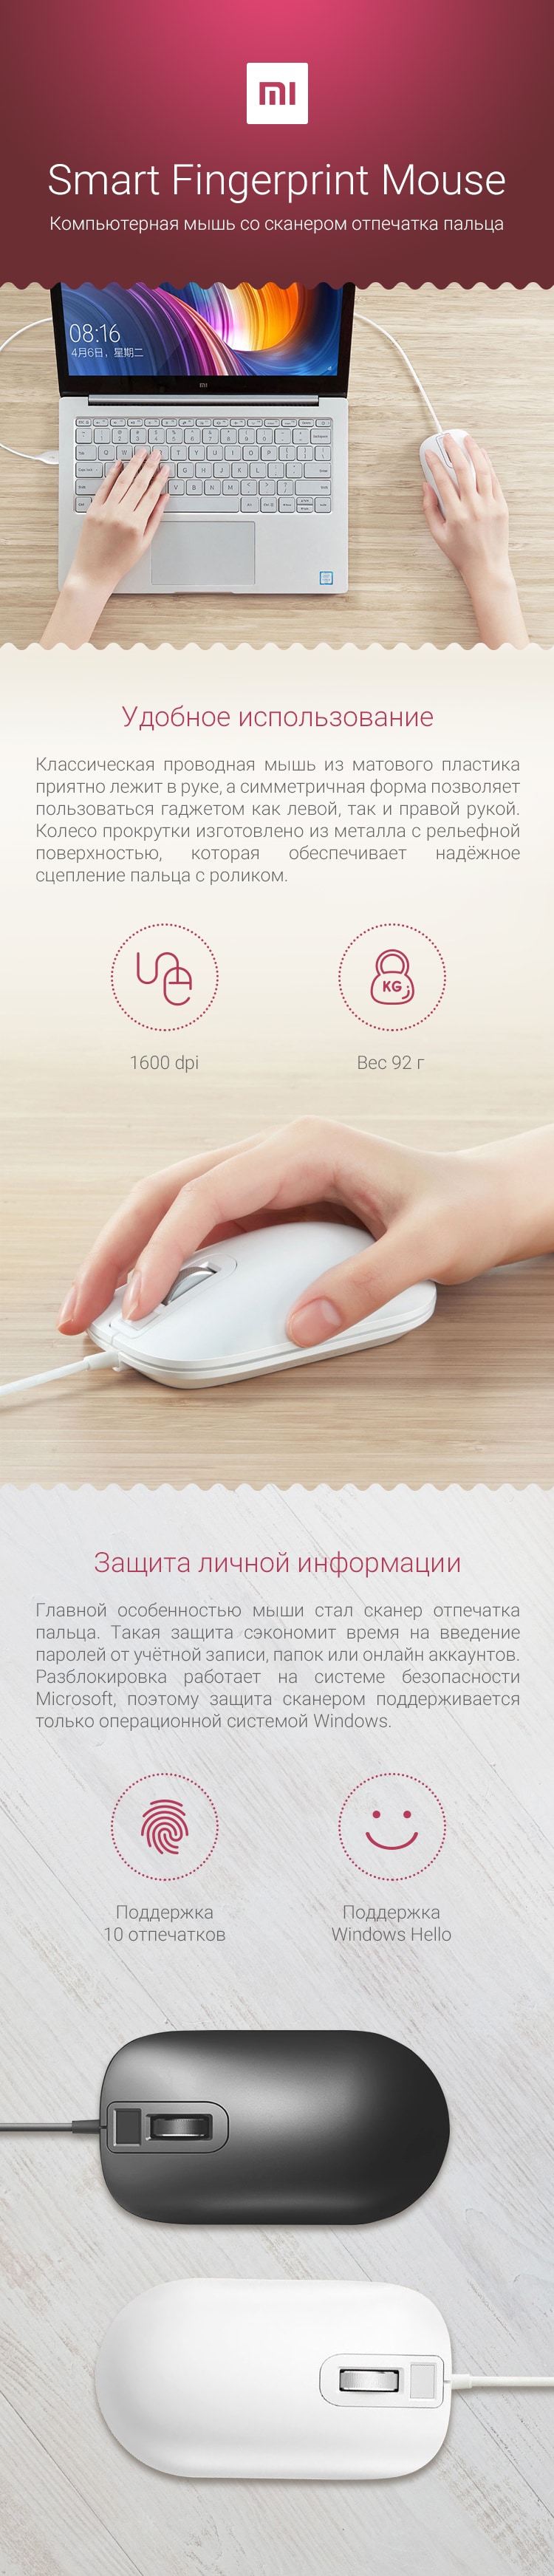 Компьютерная мышь Xiaomi Smart Fingerprint Mouse